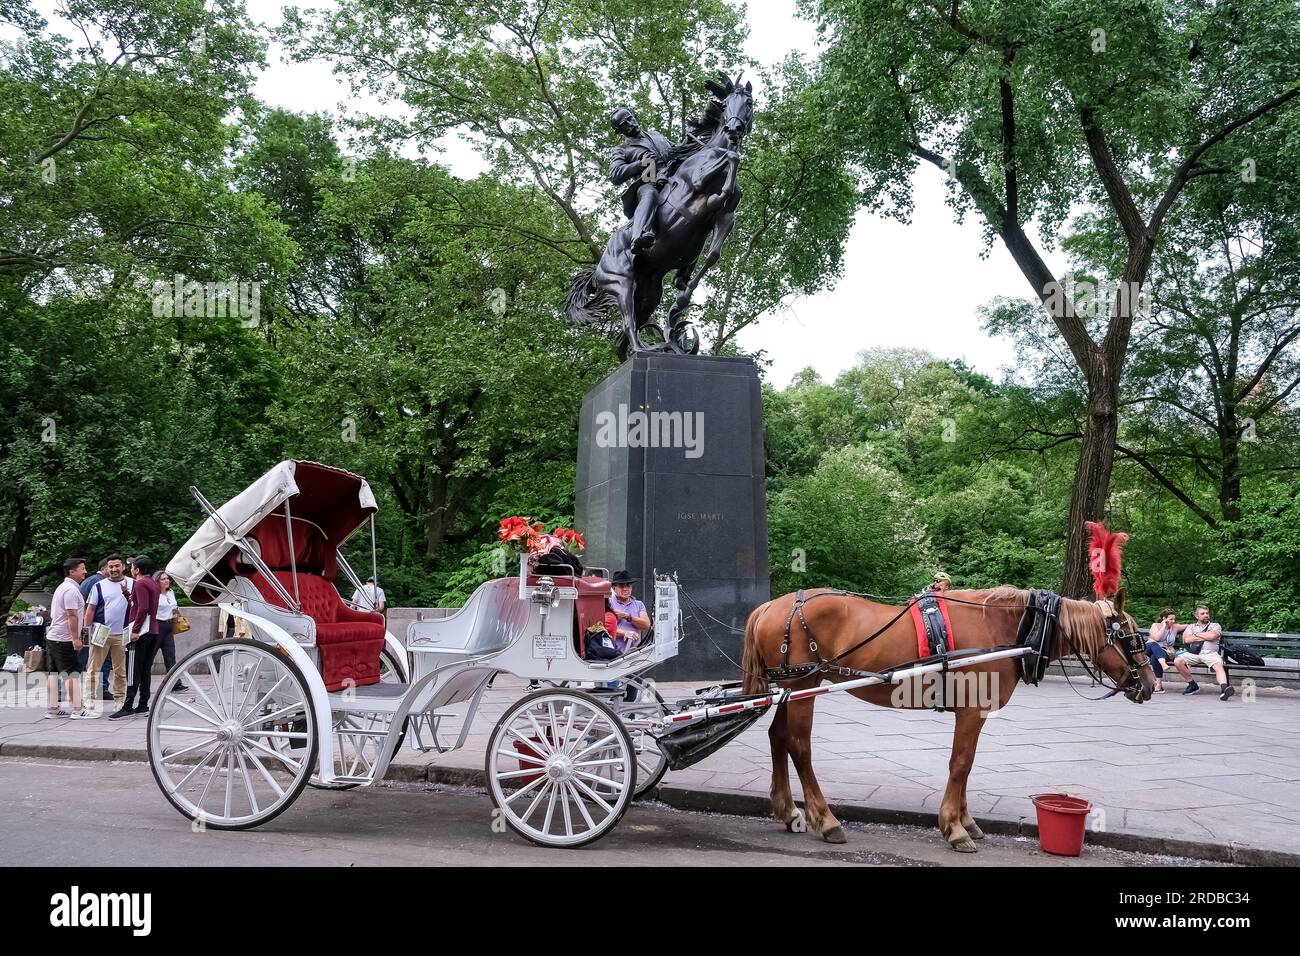 Blick auf die Reiterstatue von José Martí, die im Central Park von Manhattan im US-Bundesstaat New York installiert ist. Stockfoto